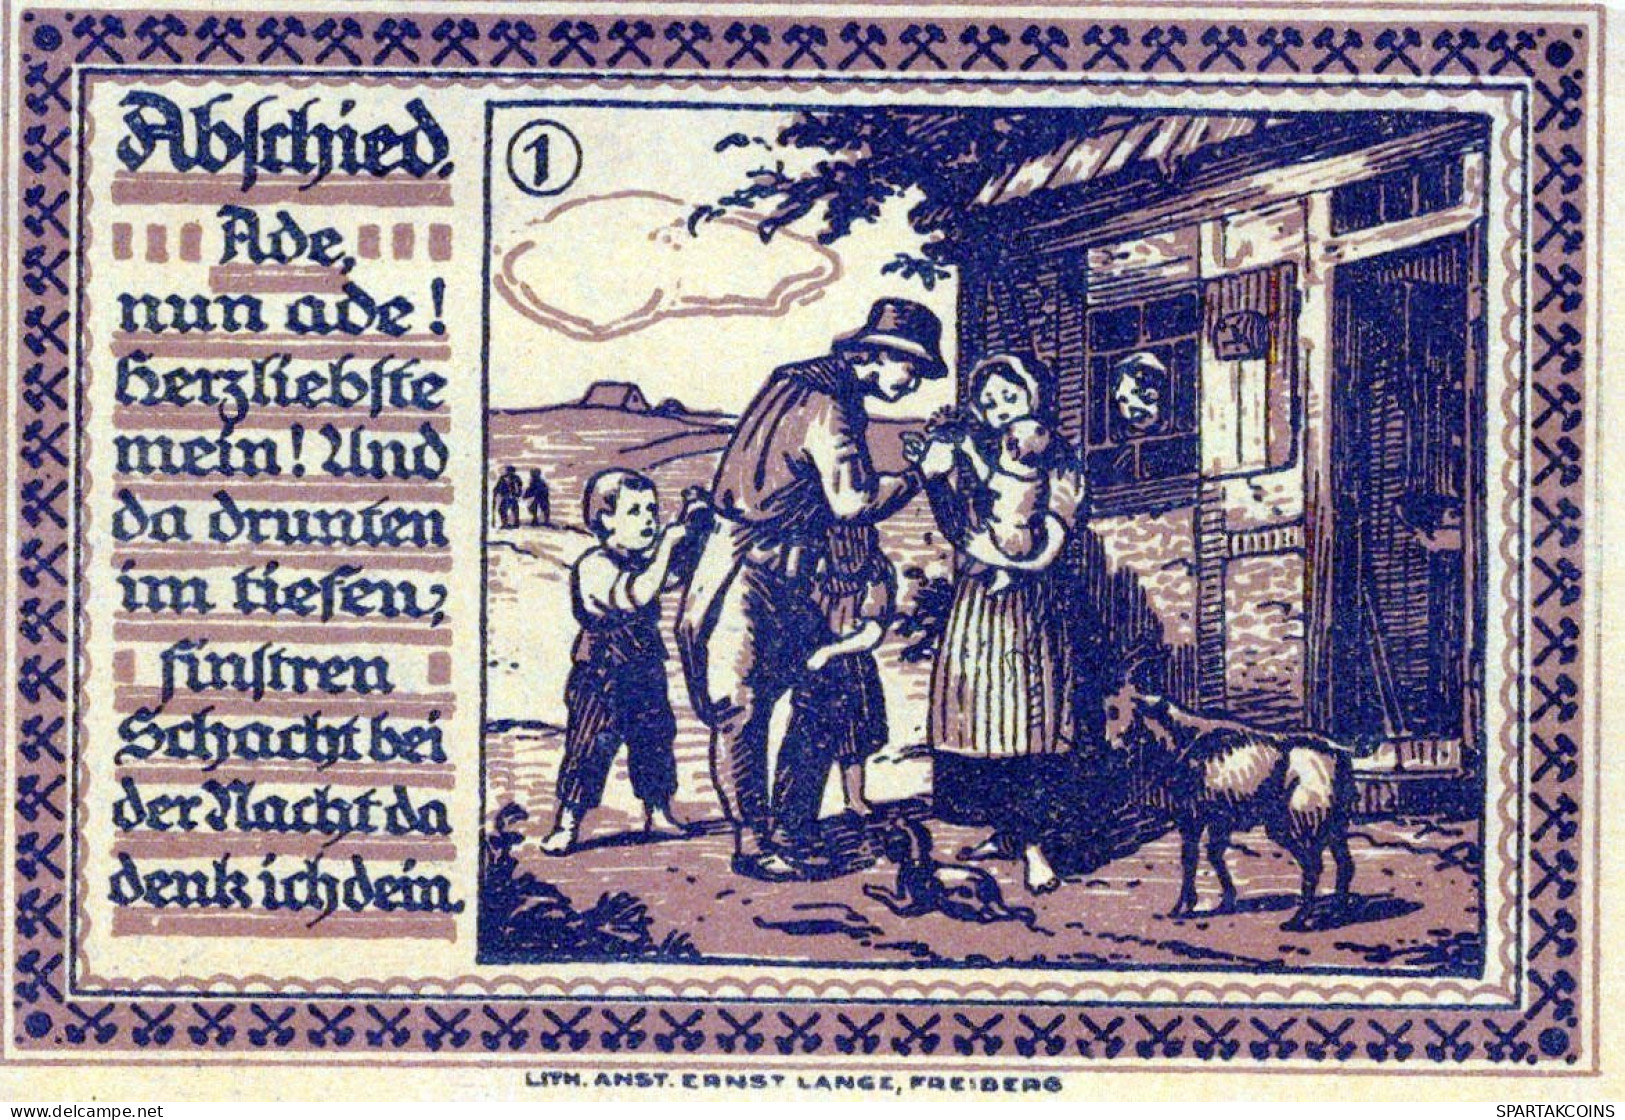 75 PFENNIG 1921 Stadt FREIBERG Saxony UNC DEUTSCHLAND Notgeld Banknote #PA589 - [11] Local Banknote Issues